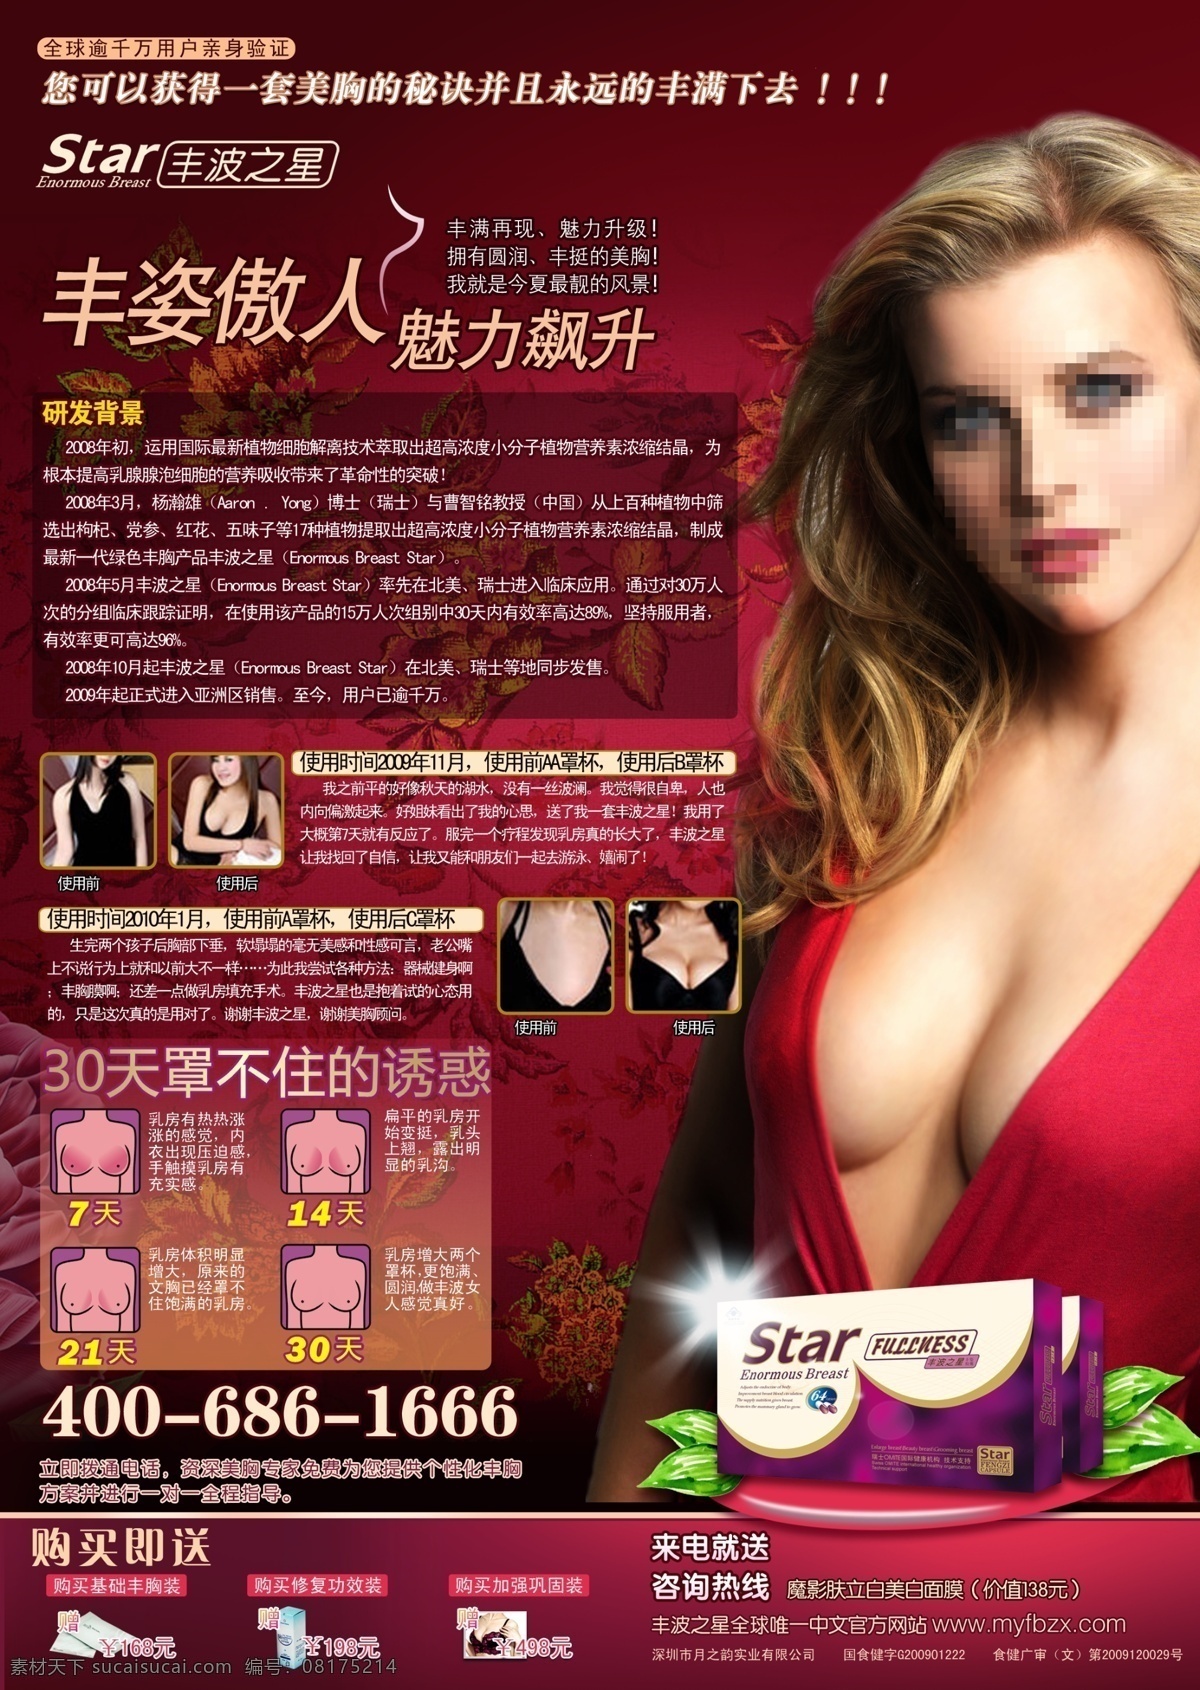 丰胸广告杂志 丰胸 广告 杂志 单页 美女 广告设计模板 源文件